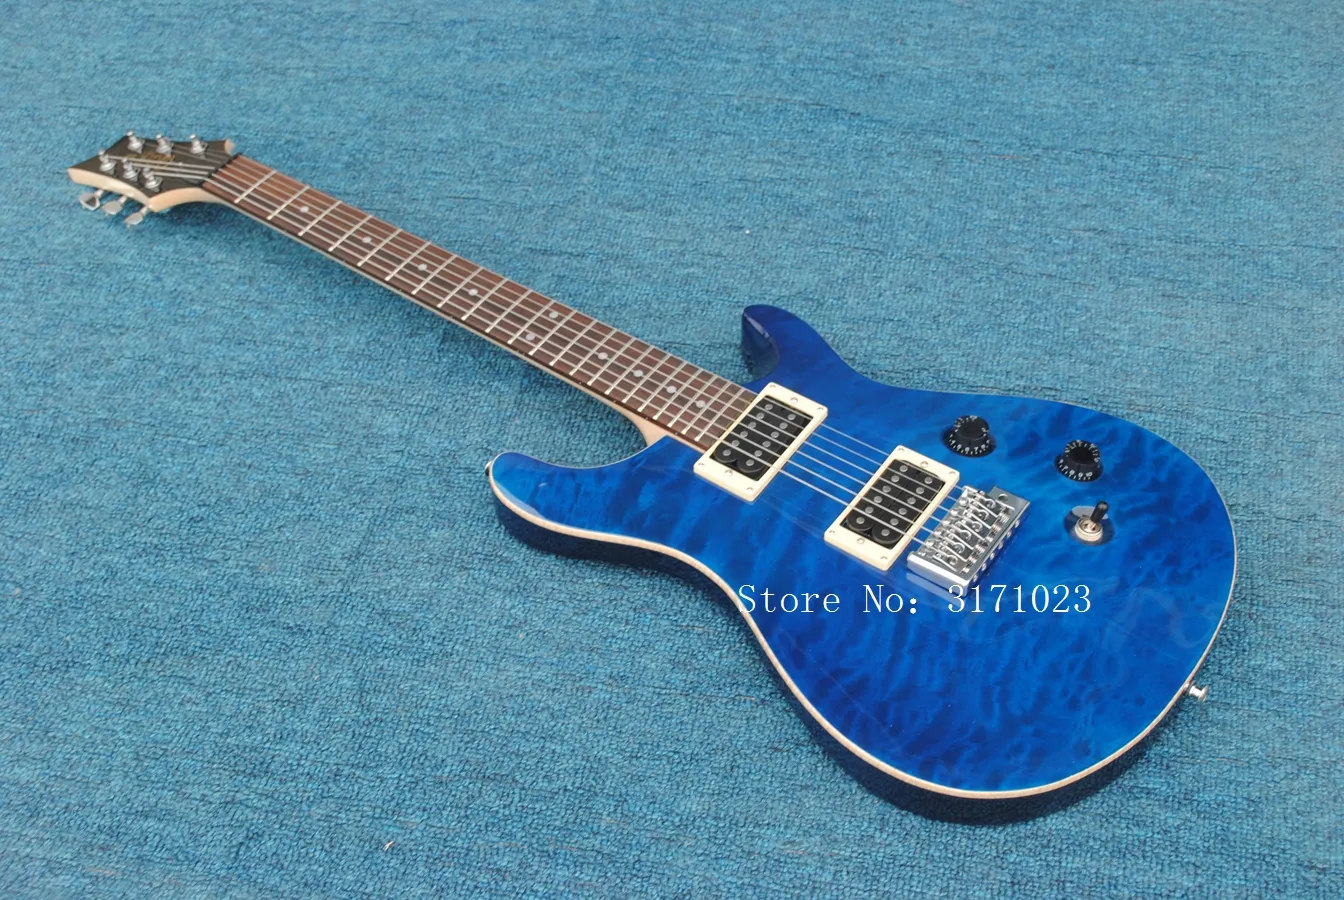 青い色と2つのハムバッカーのピックアップを持つ電気ギター、そして要求としてカスタマイズすることができます